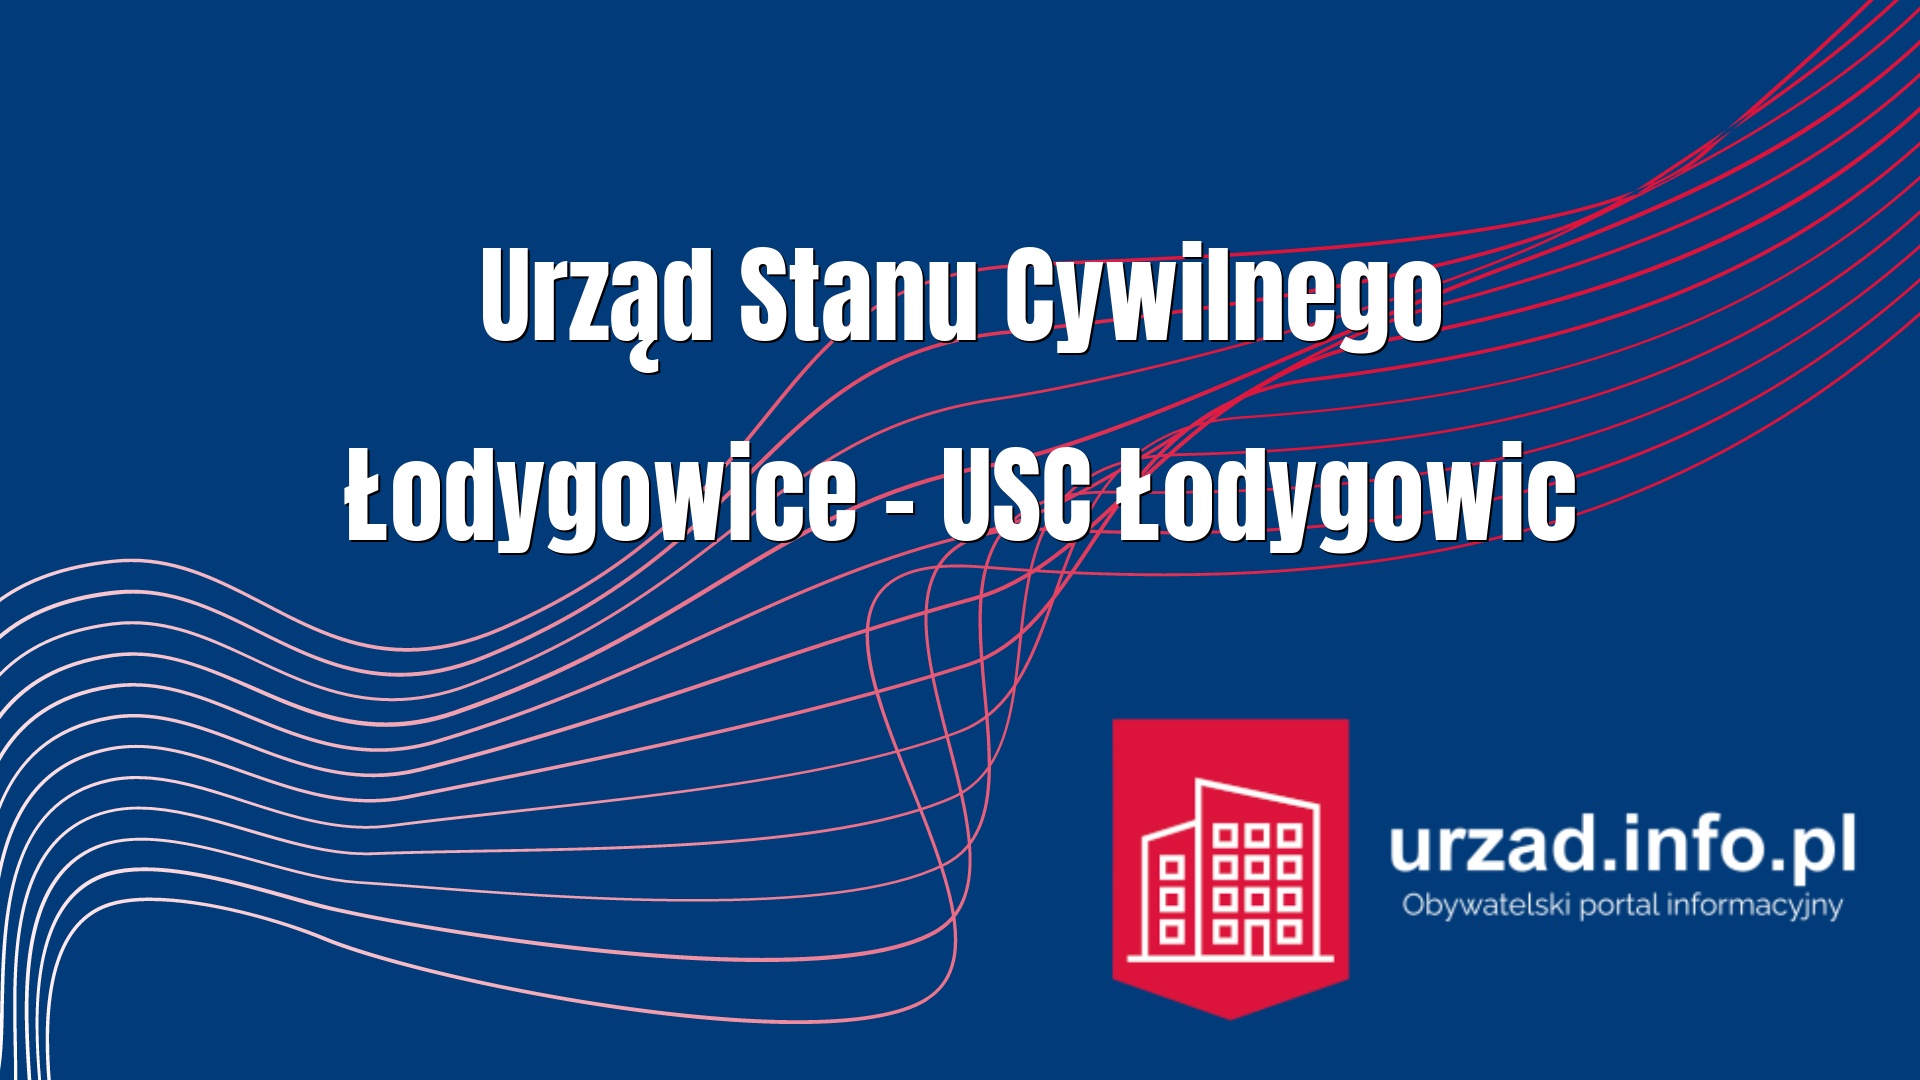 Urząd Stanu Cywilnego Łodygowice – USC Łodygowic